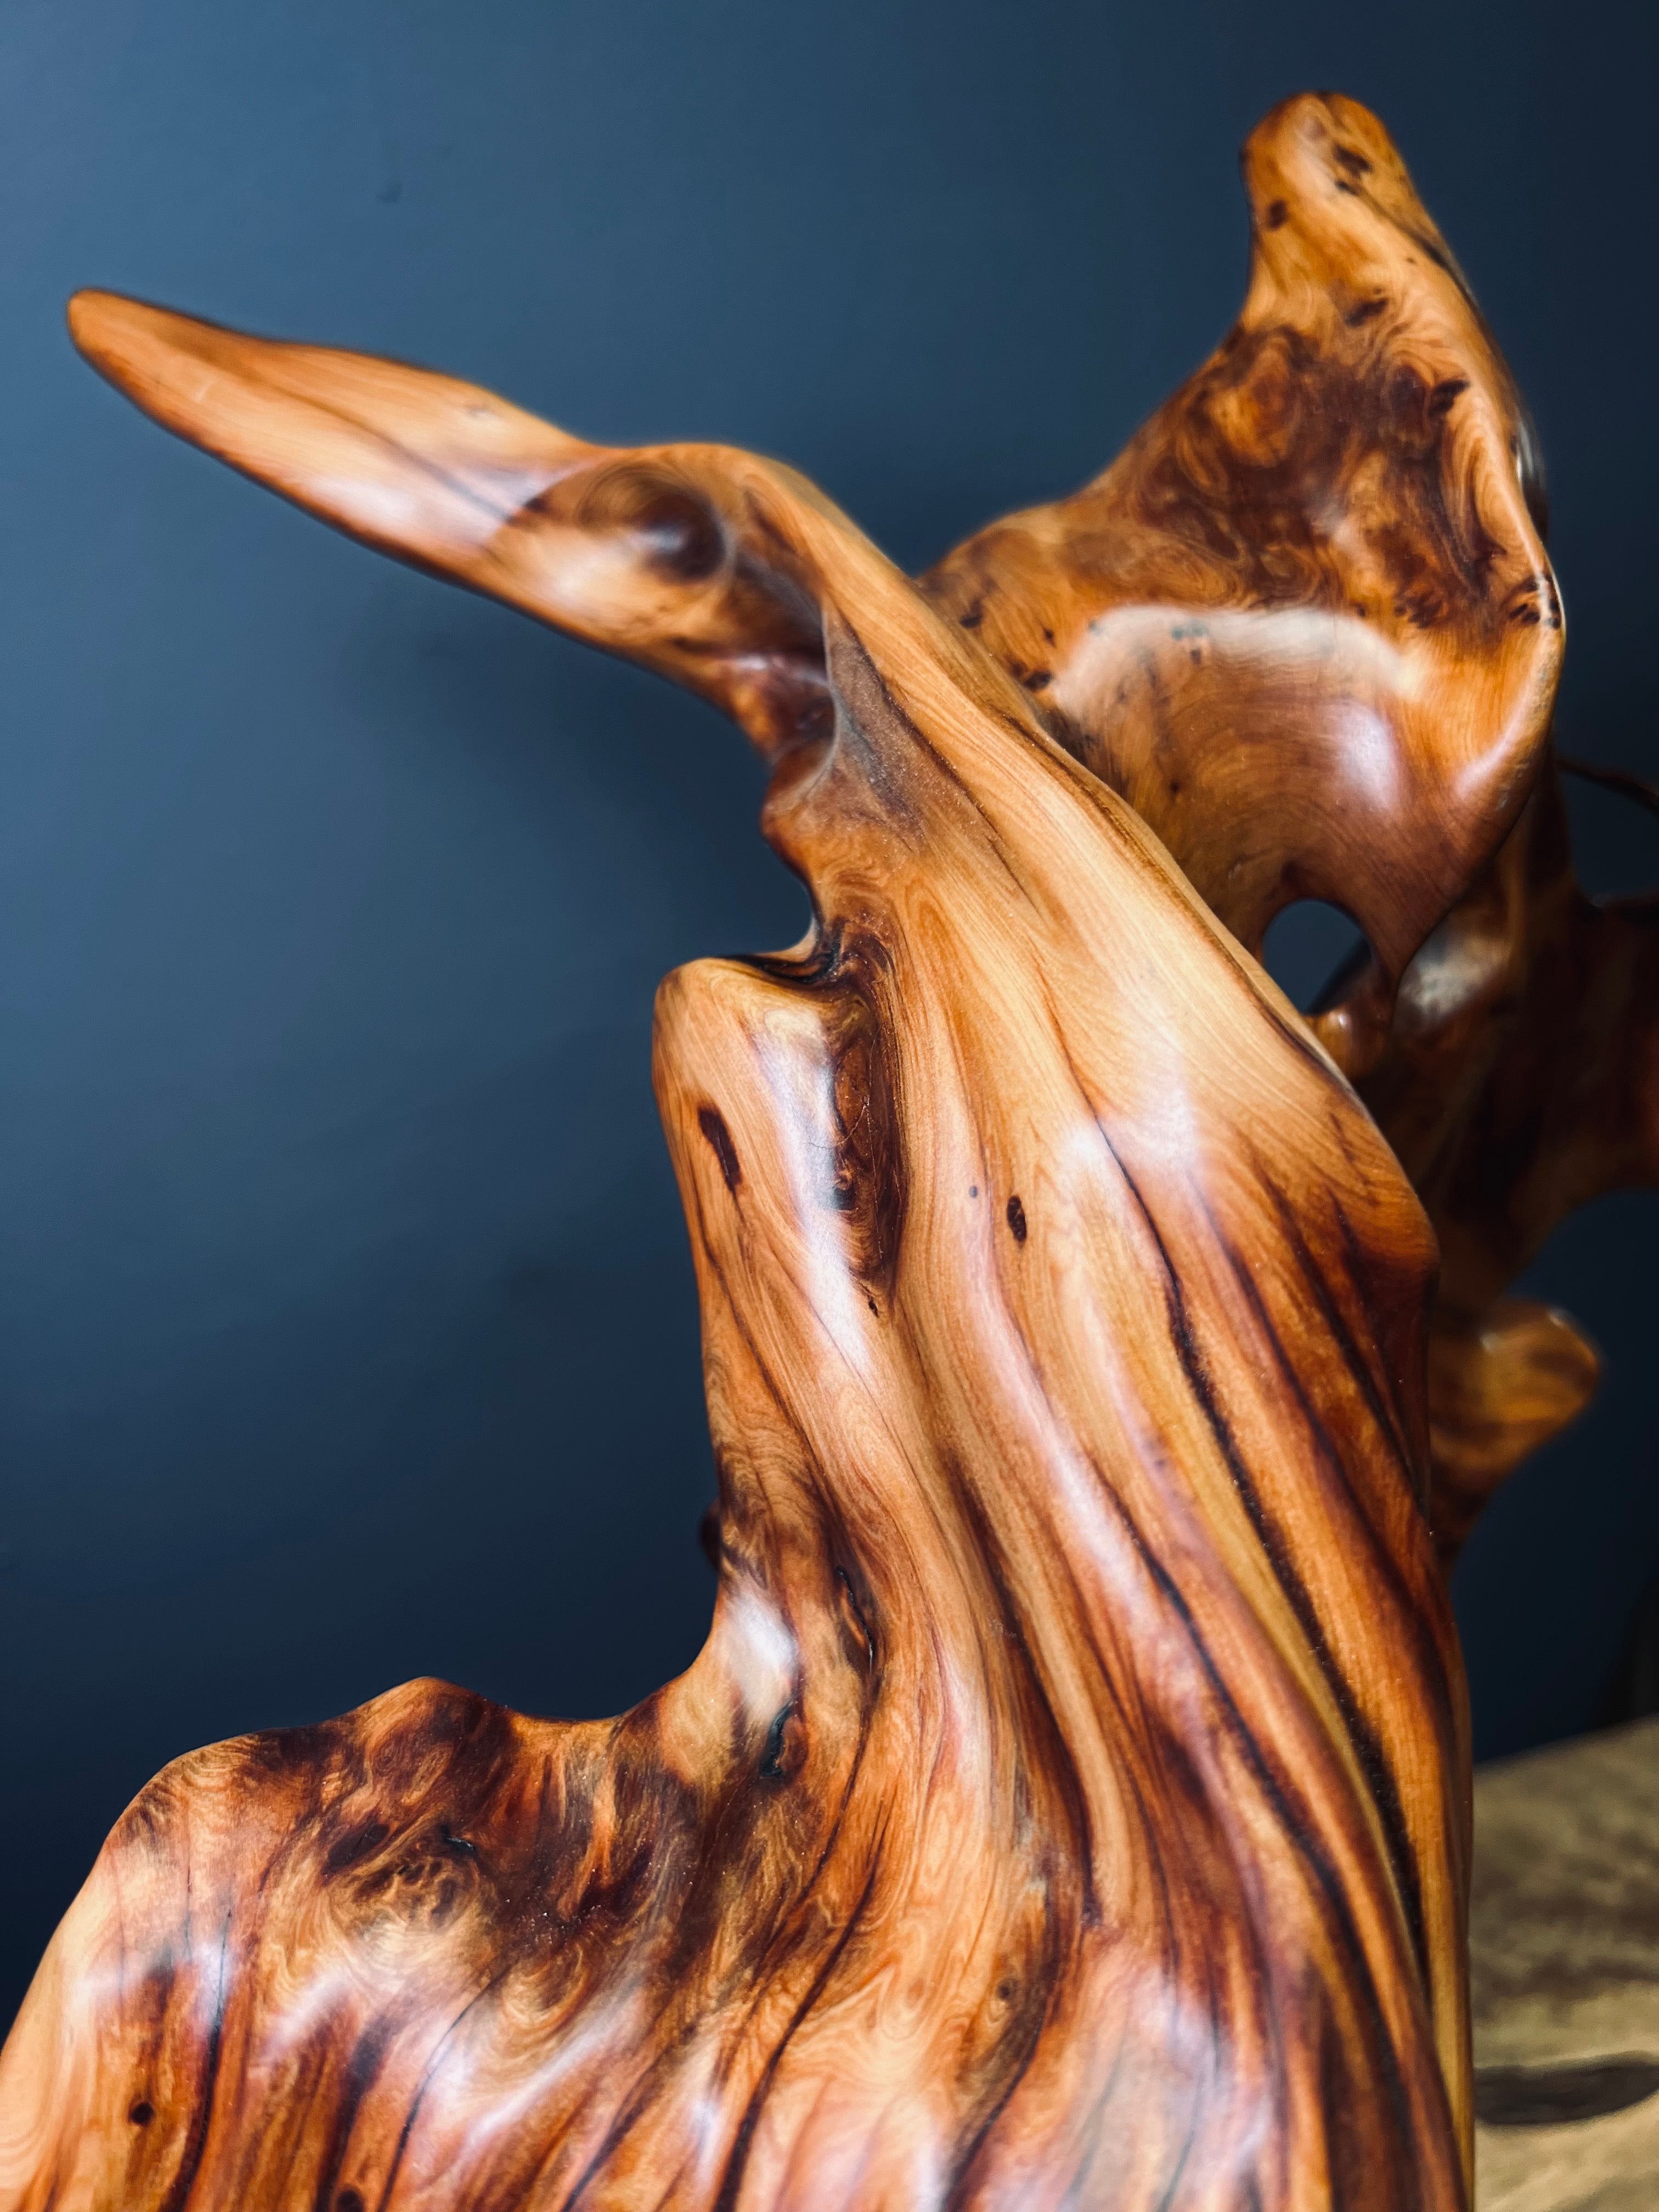 Slow Wood - Flame - Jade (Woodwork)